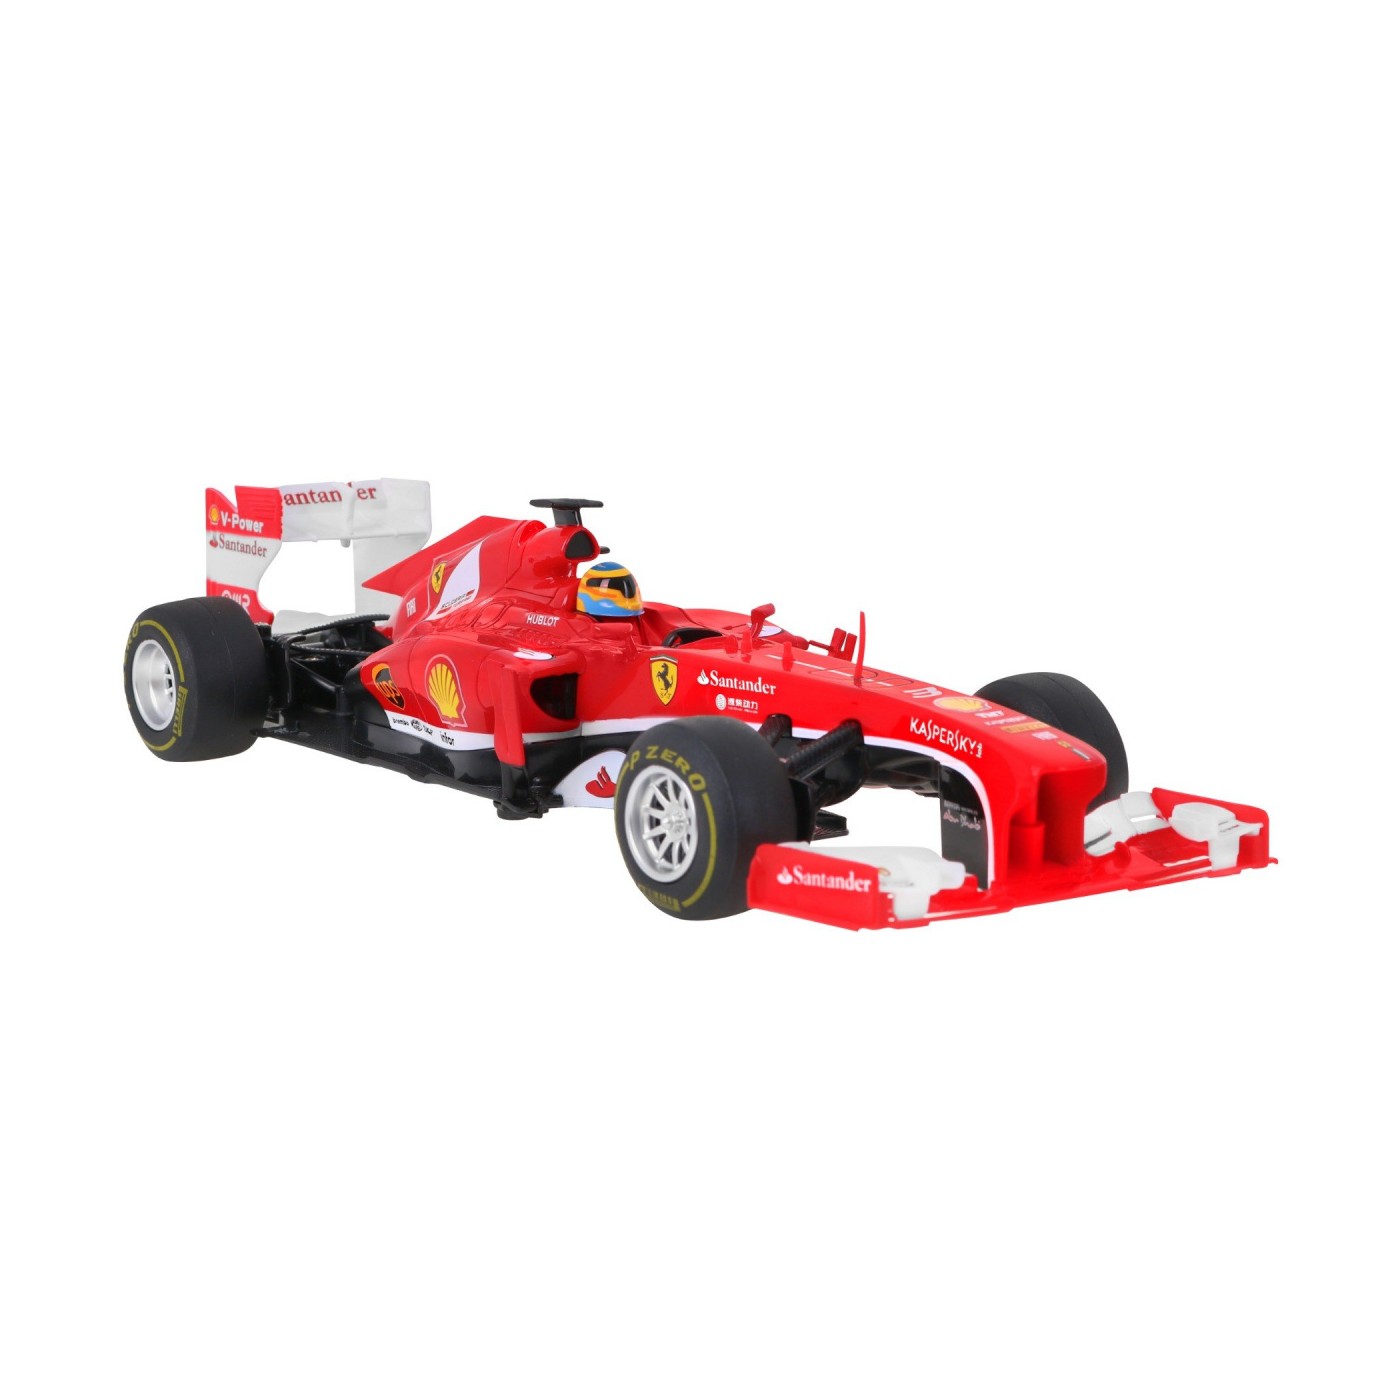 R/C toy car Ferrari F1 1:12 RASTAR